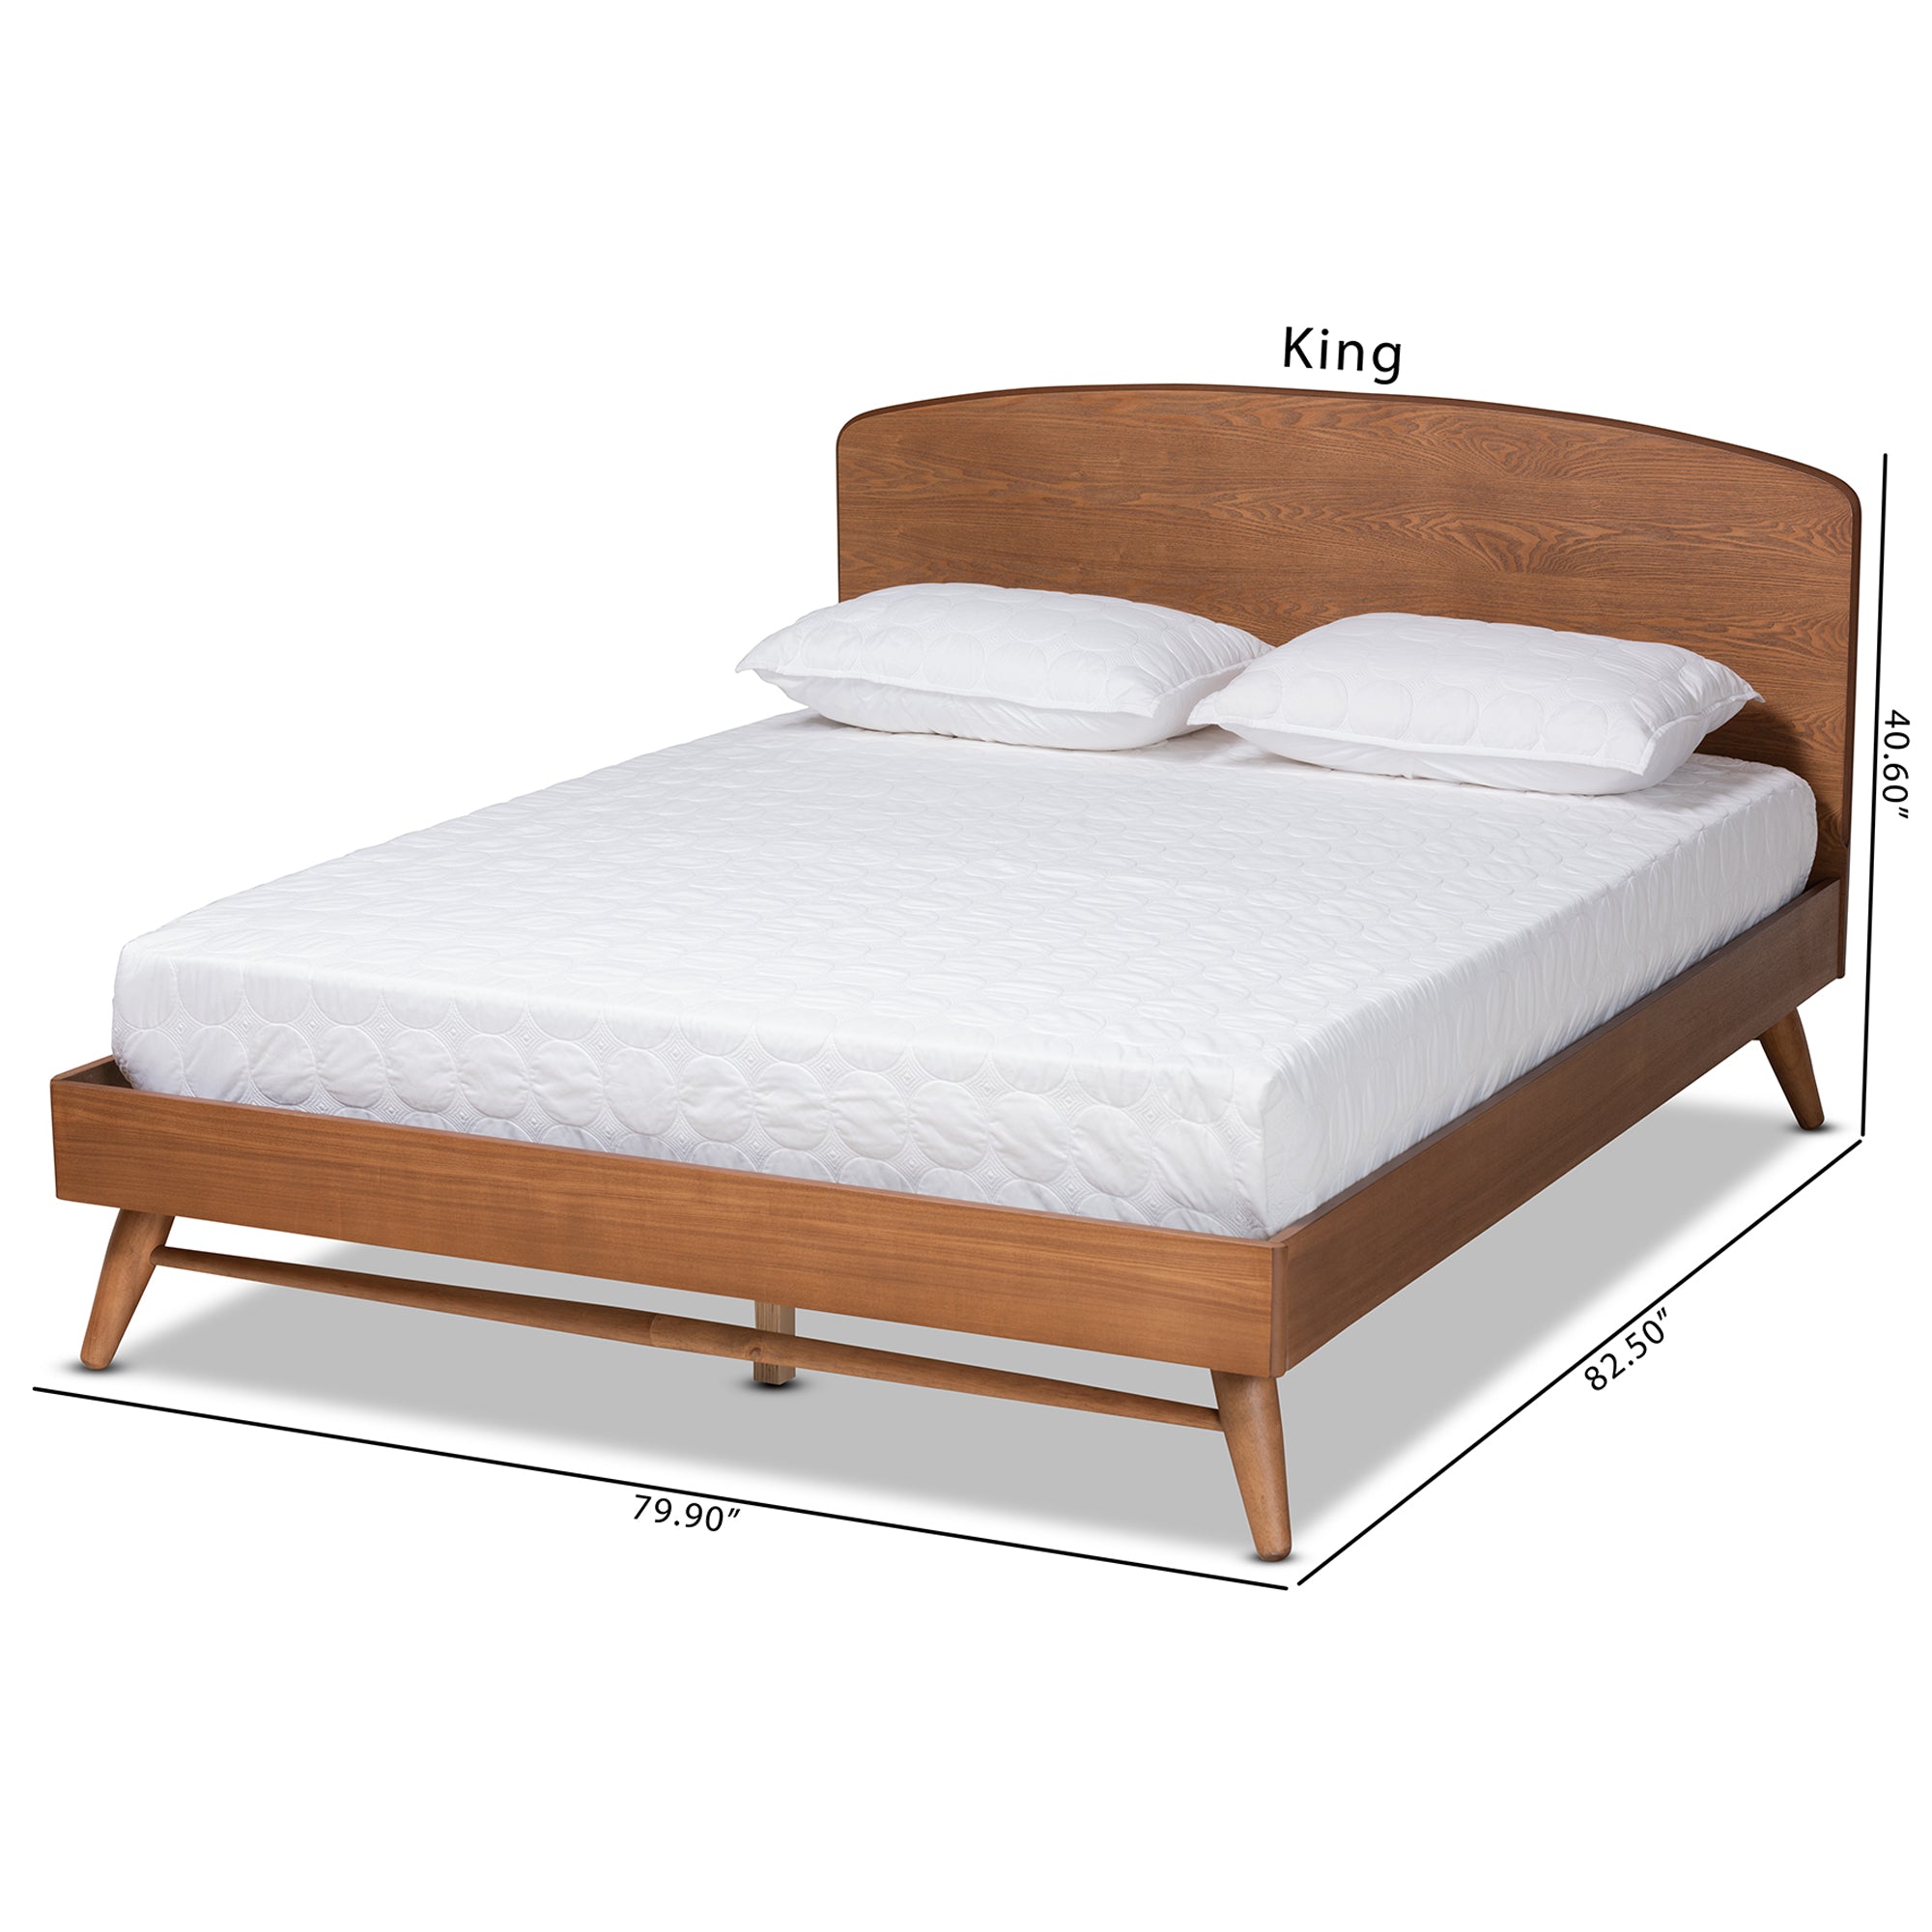 Keagan Mid-Century Bed-Bed-Baxton Studio - WI-Wall2Wall Furnishings